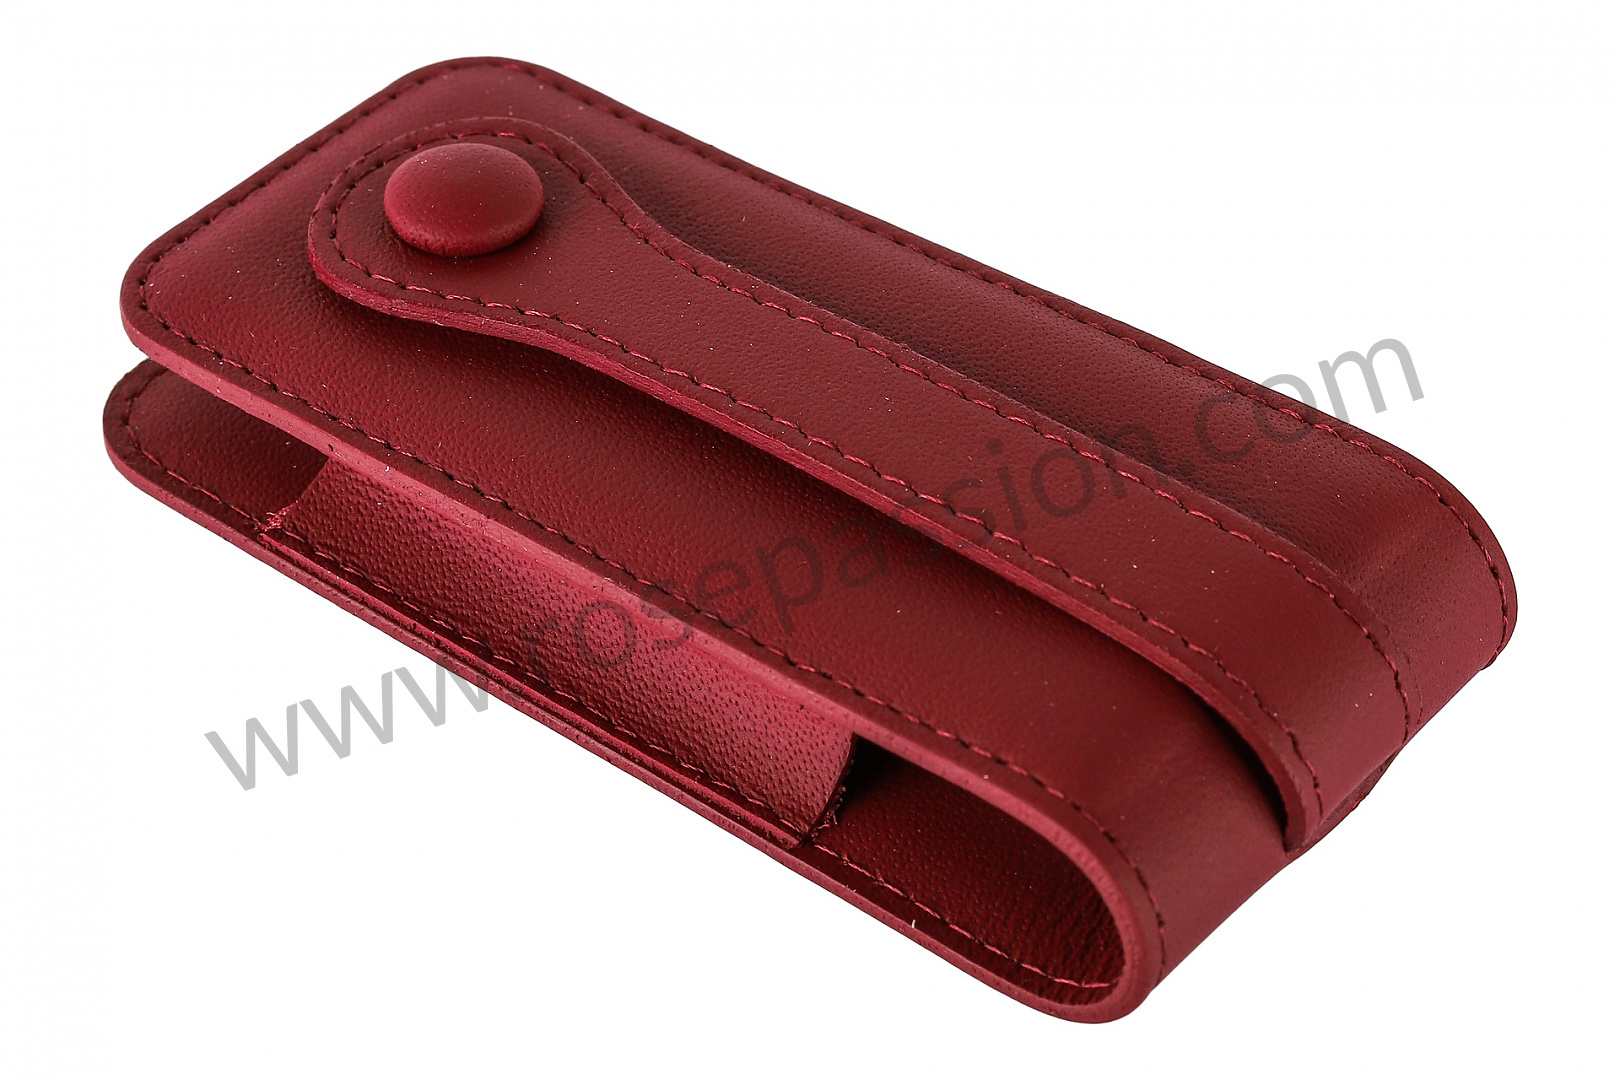 P256390 - 97004400111 - Étui clé cuir rouge bordeaux pour Porsche